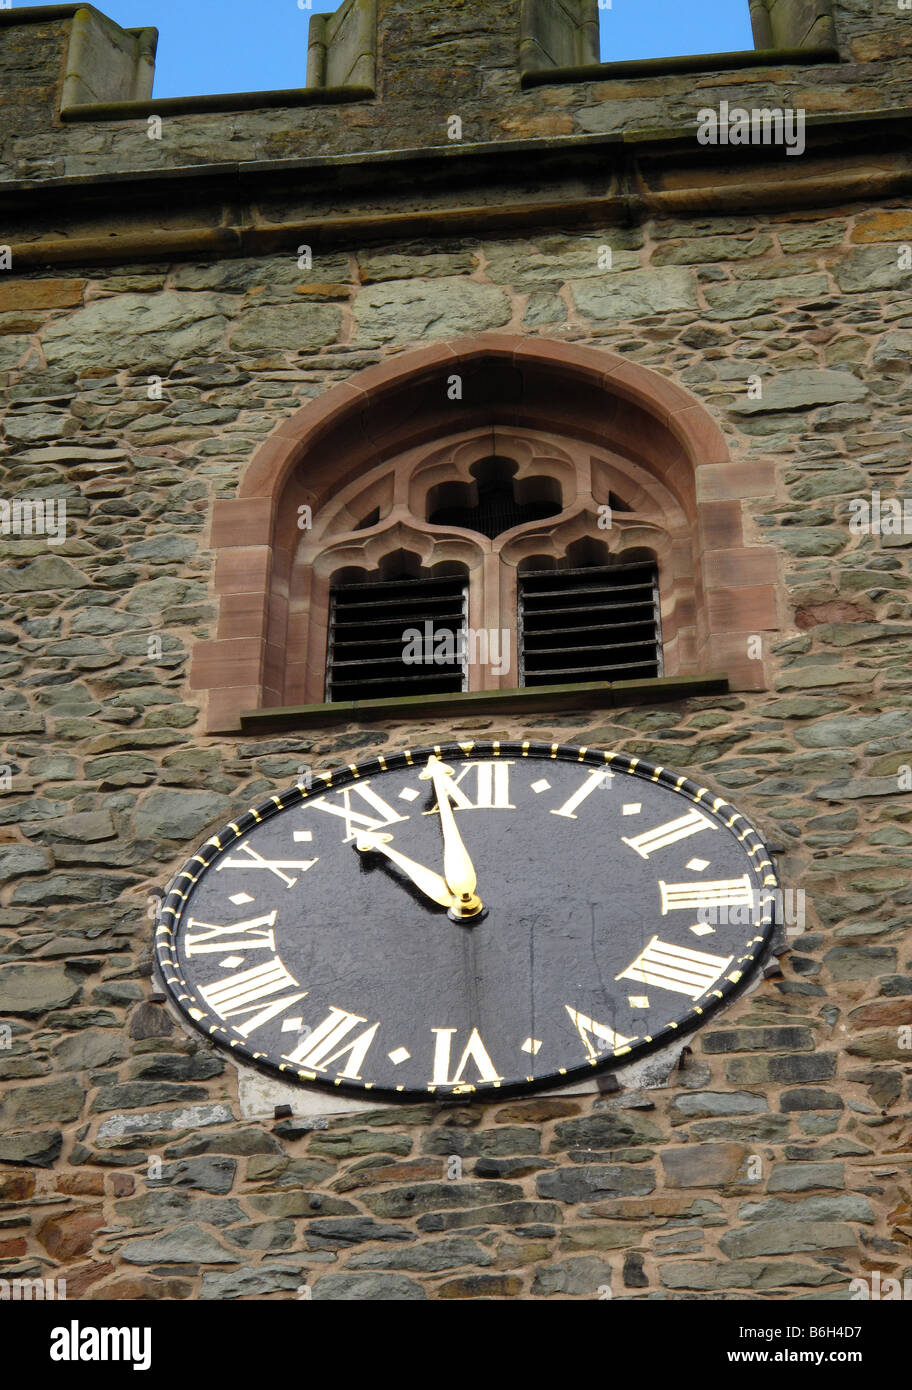 Tour de l'horloge de l'église en pierre avec metal horloge montrant 11,59 pierre, fenêtre à meneaux au-dessus et castellations Banque D'Images